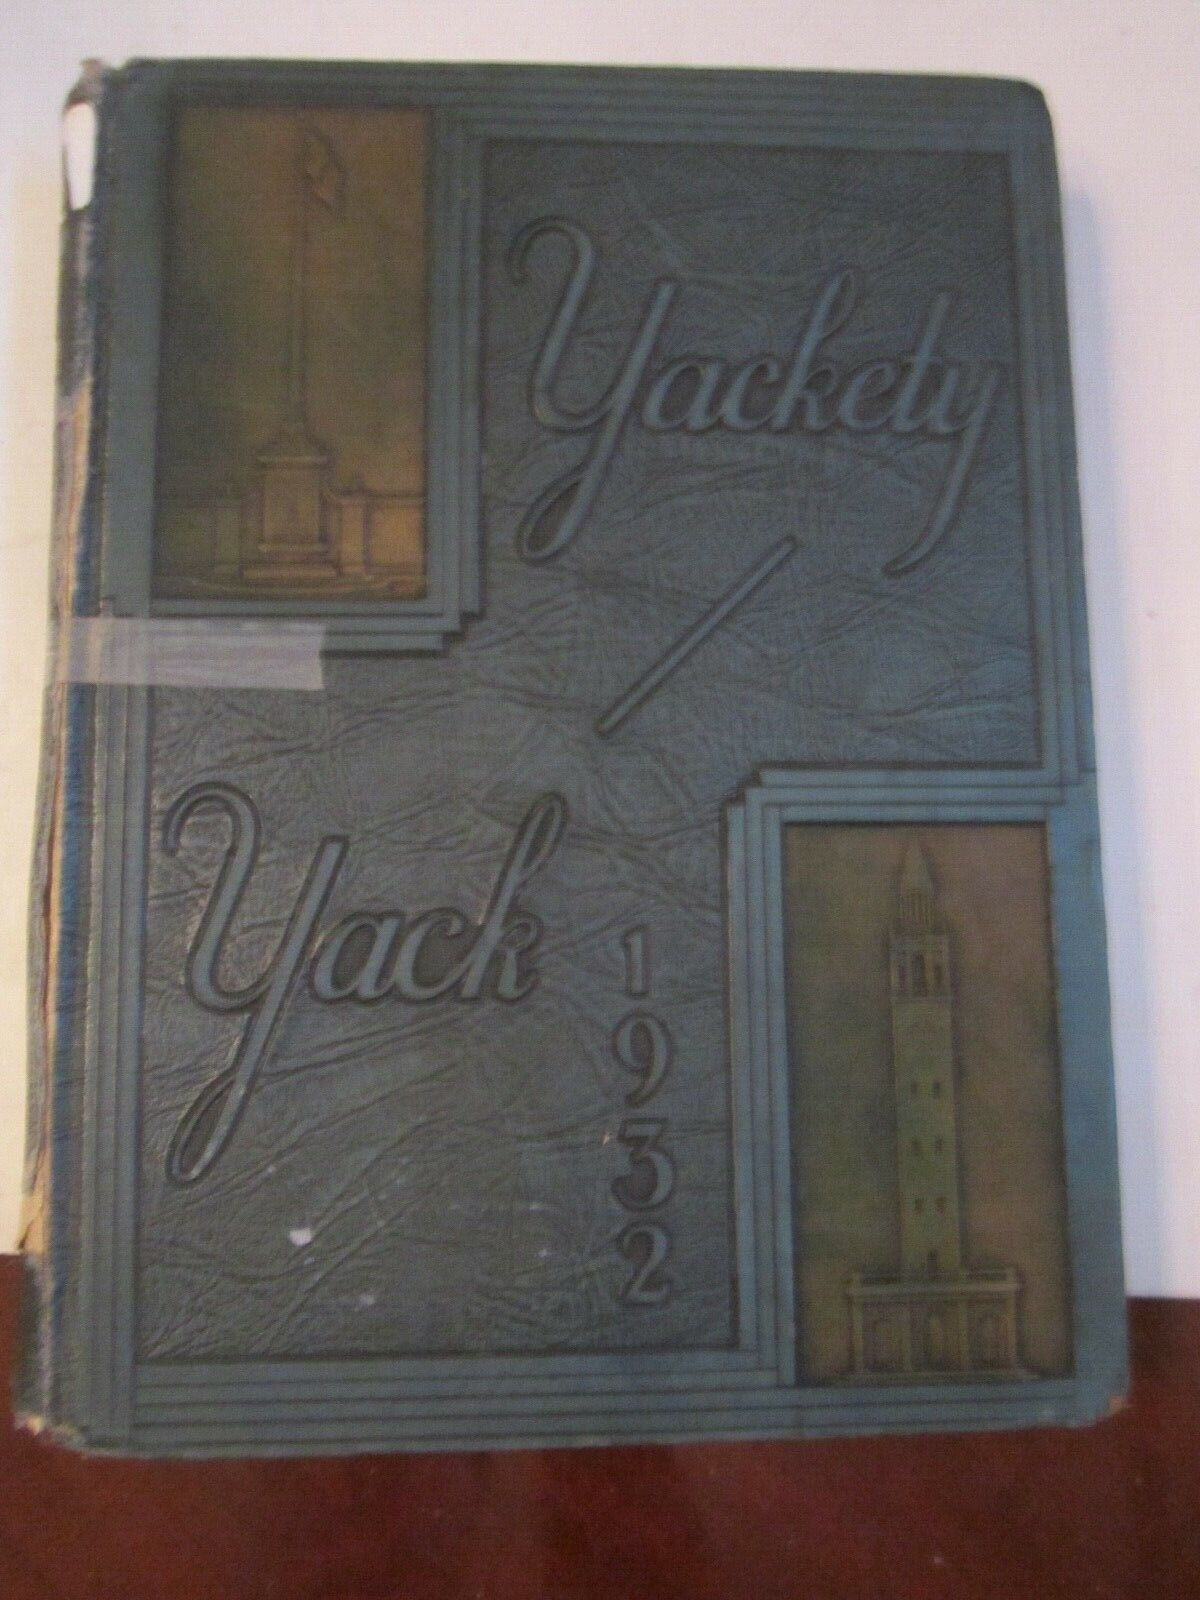 1932 UNIVERSITY OF NORTH CAROLINA YEARBOOK - YAKETY YACK